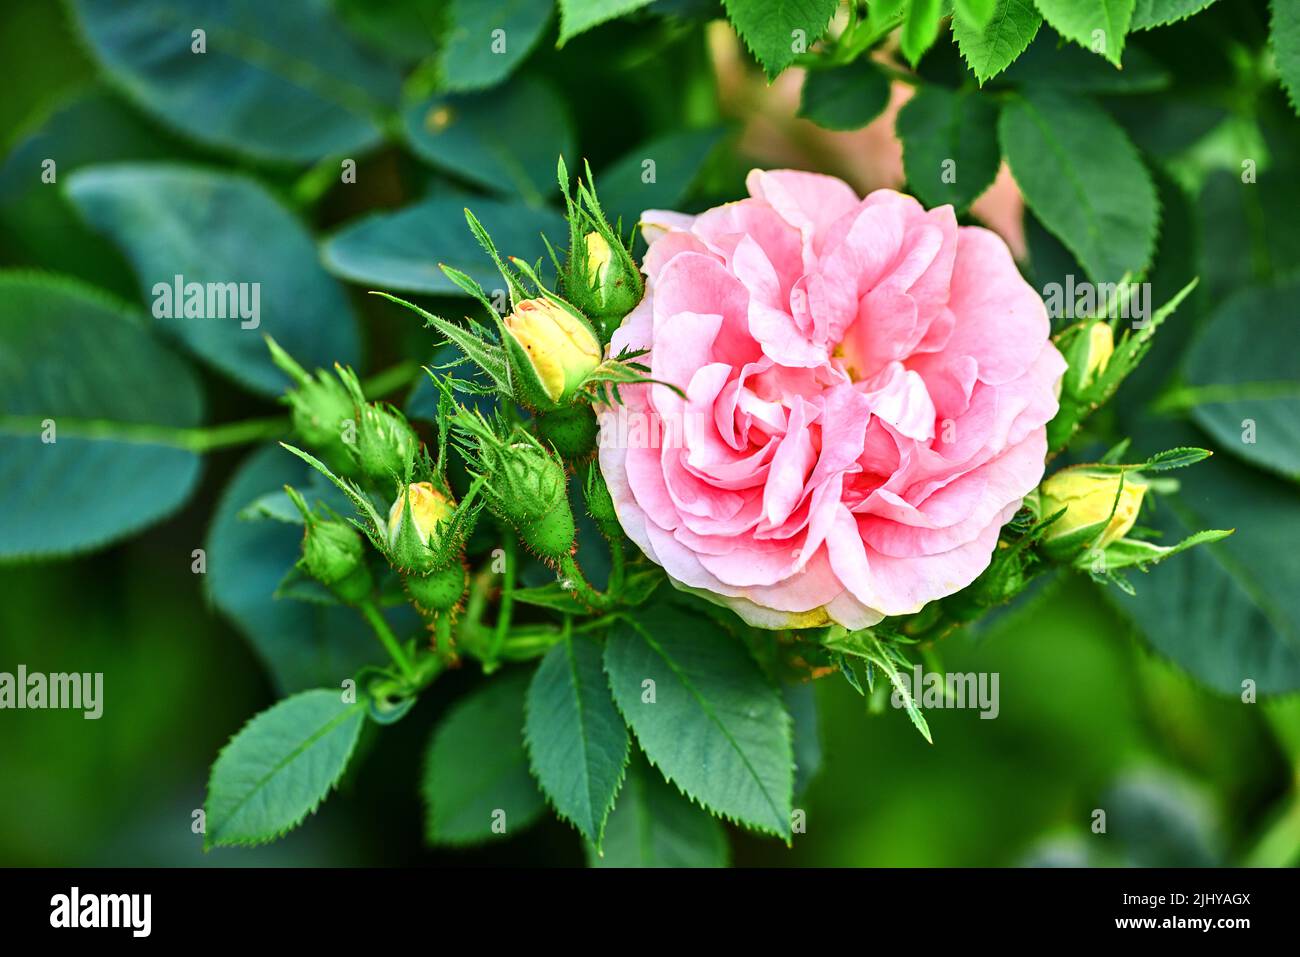 Fiori rosa colorati che crescono in un giardino. Primo piano di grandi fanciulle rose arrossite o rosa alba incarnata con petali luminosi che fioriscono e fioriscono Foto Stock